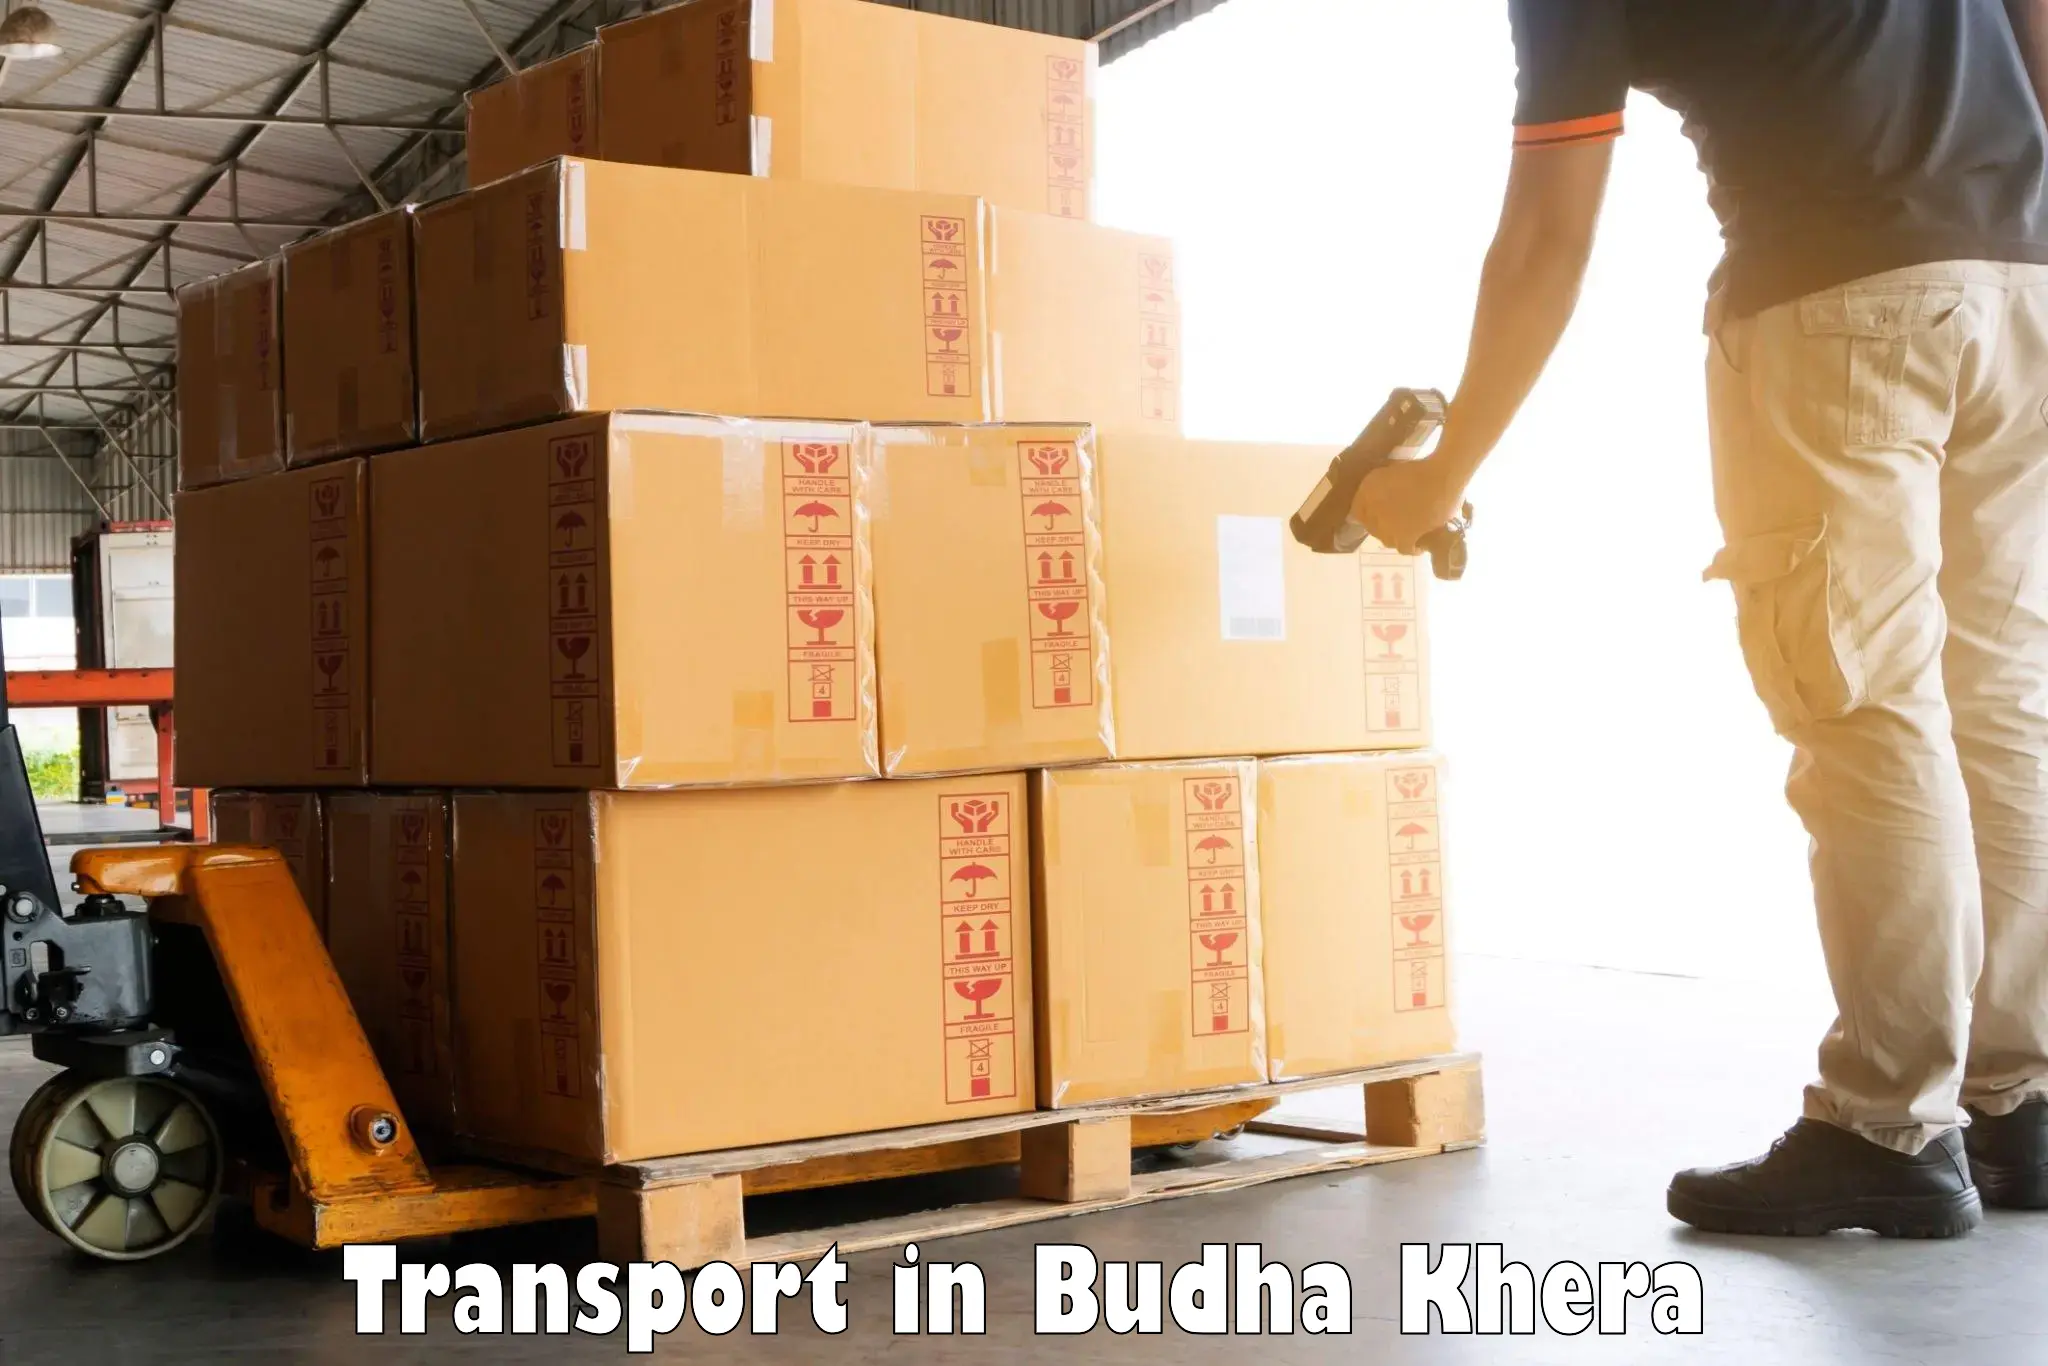 Furniture transport service in Budha Khera